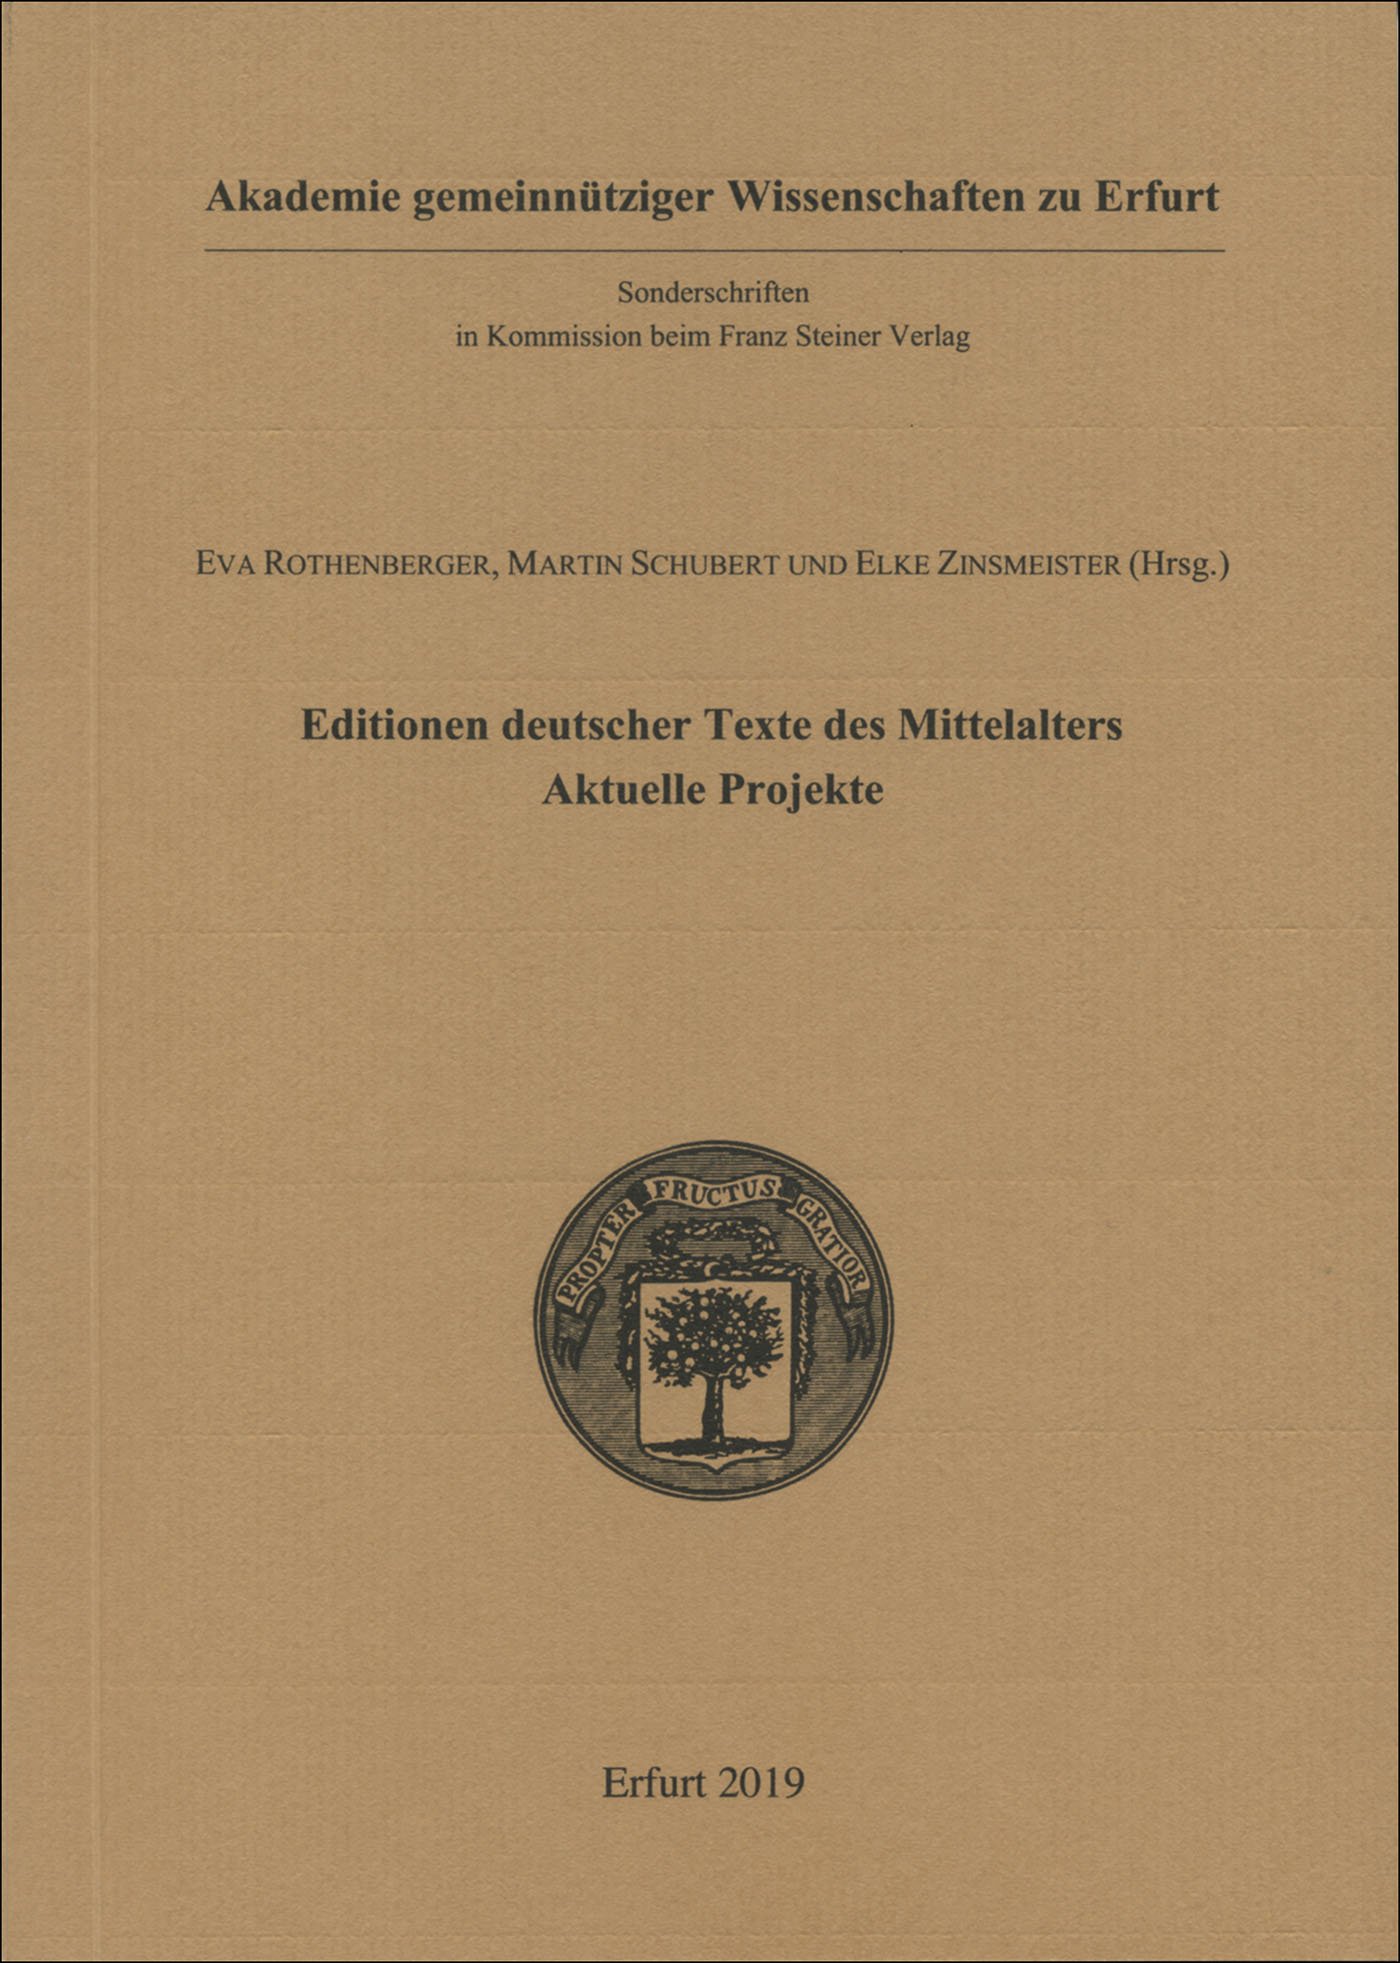 Editionen deutscher Texte des Mittelalters - aktuelle Projekte